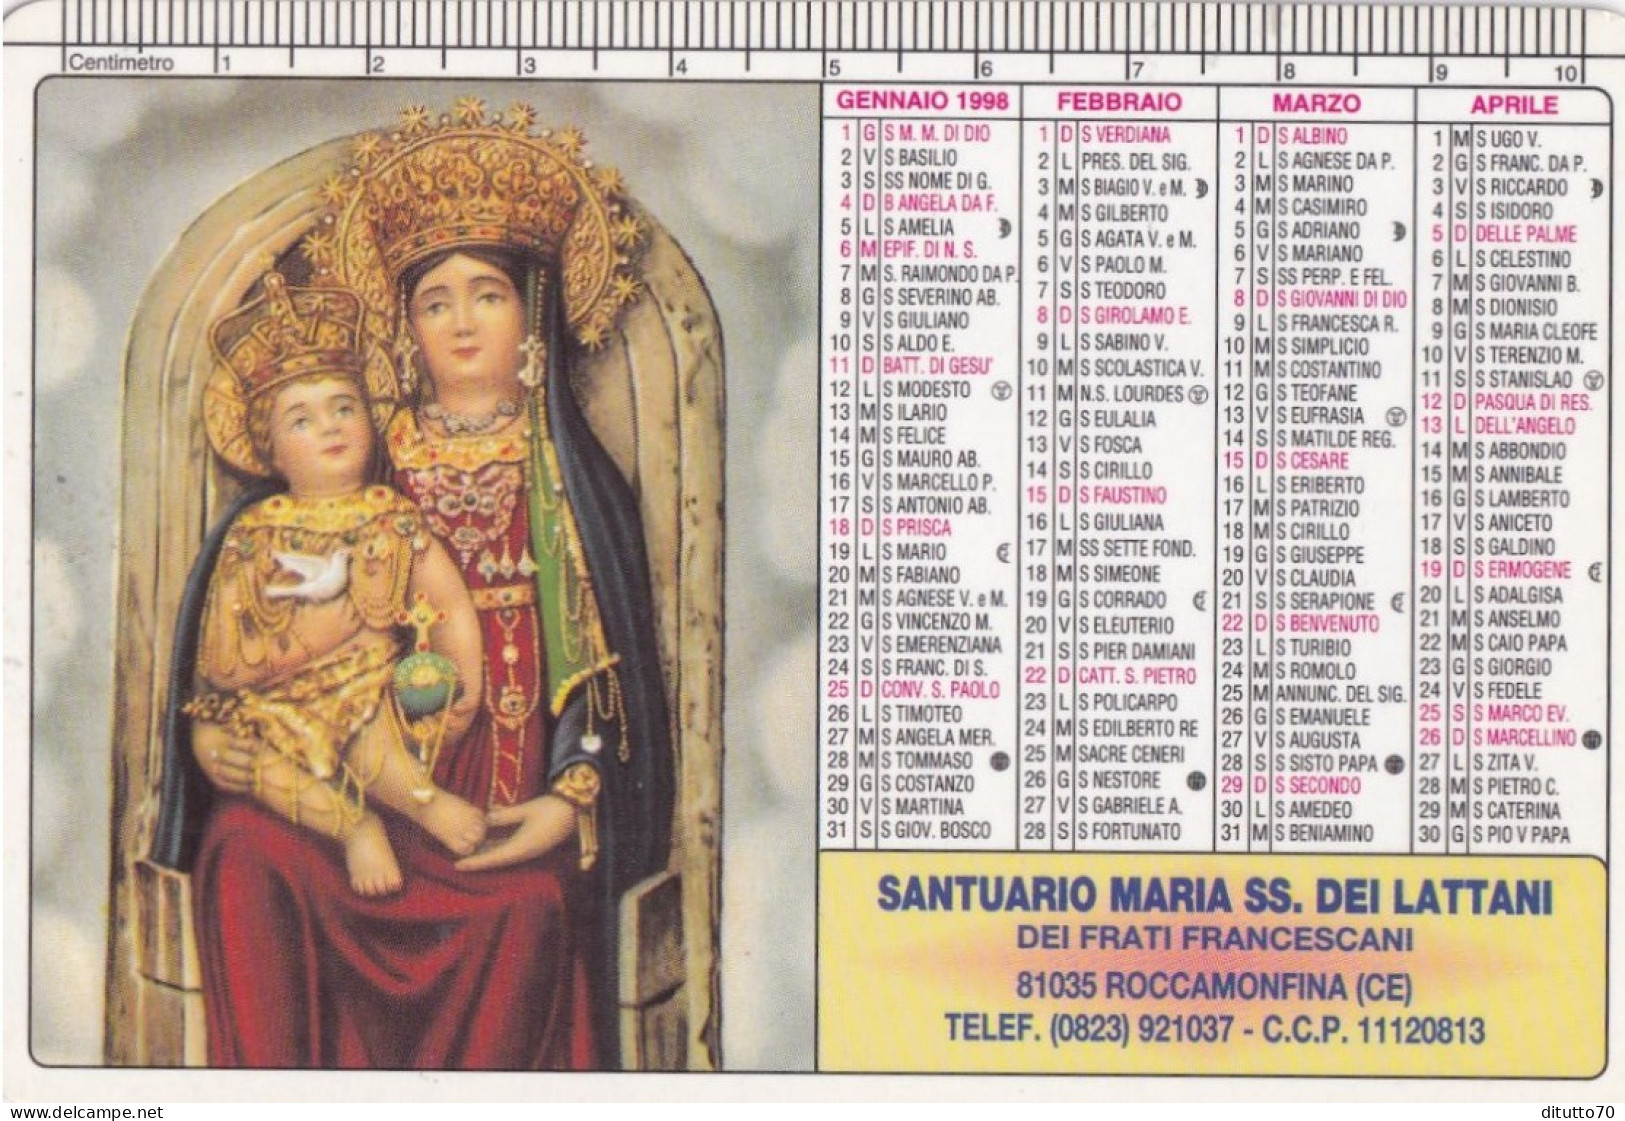 Calendarietto - Santuario Maria Ss.dei Lattani Dei Frati Francescani - Roccamonfina - Caserta - Anno 1998 - Small : 1991-00